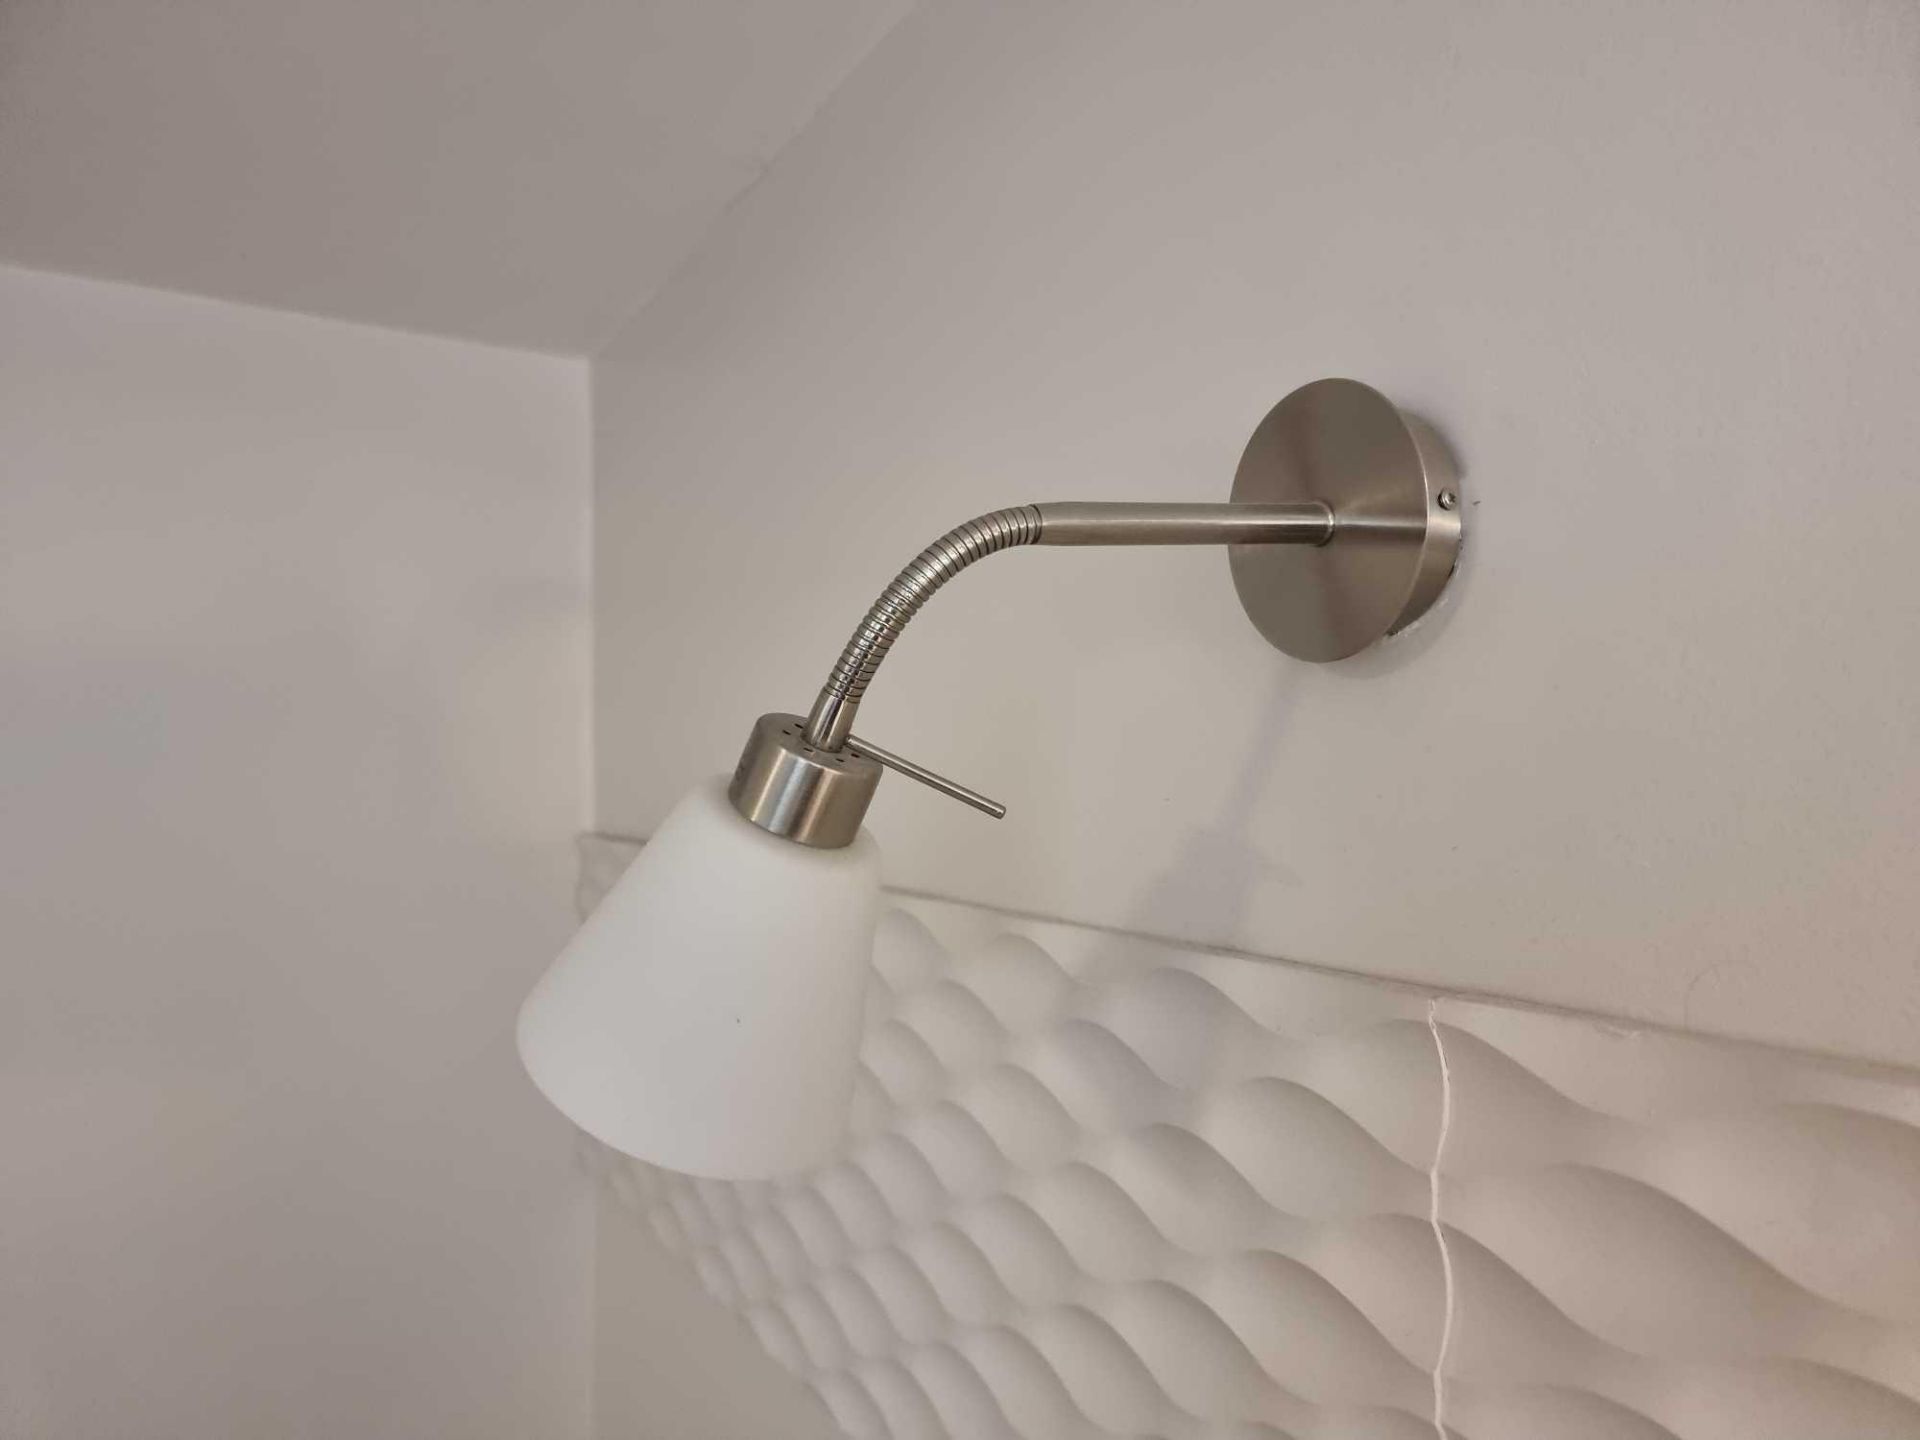 2 X Flex Metal Wall Light. Modern Metal Flexible Wall Light With Glass Opaque Shade A Great Addition - Bild 2 aus 2